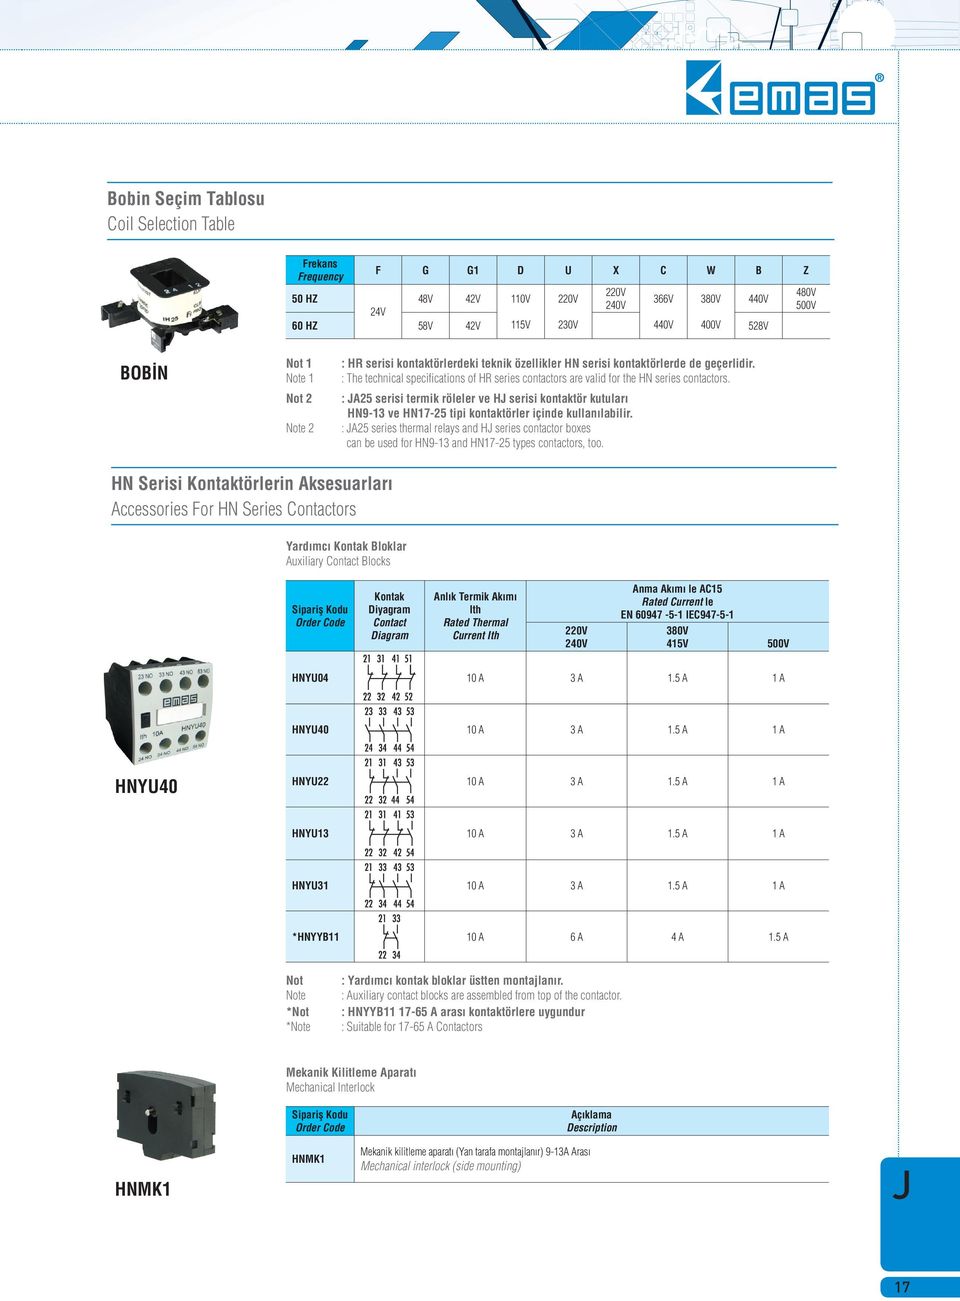 : A25 serisi termik röleler ve H serisi kontaktör kutular HN913 ve HN1725 tipi kontaktörler içinde kullan labilir.